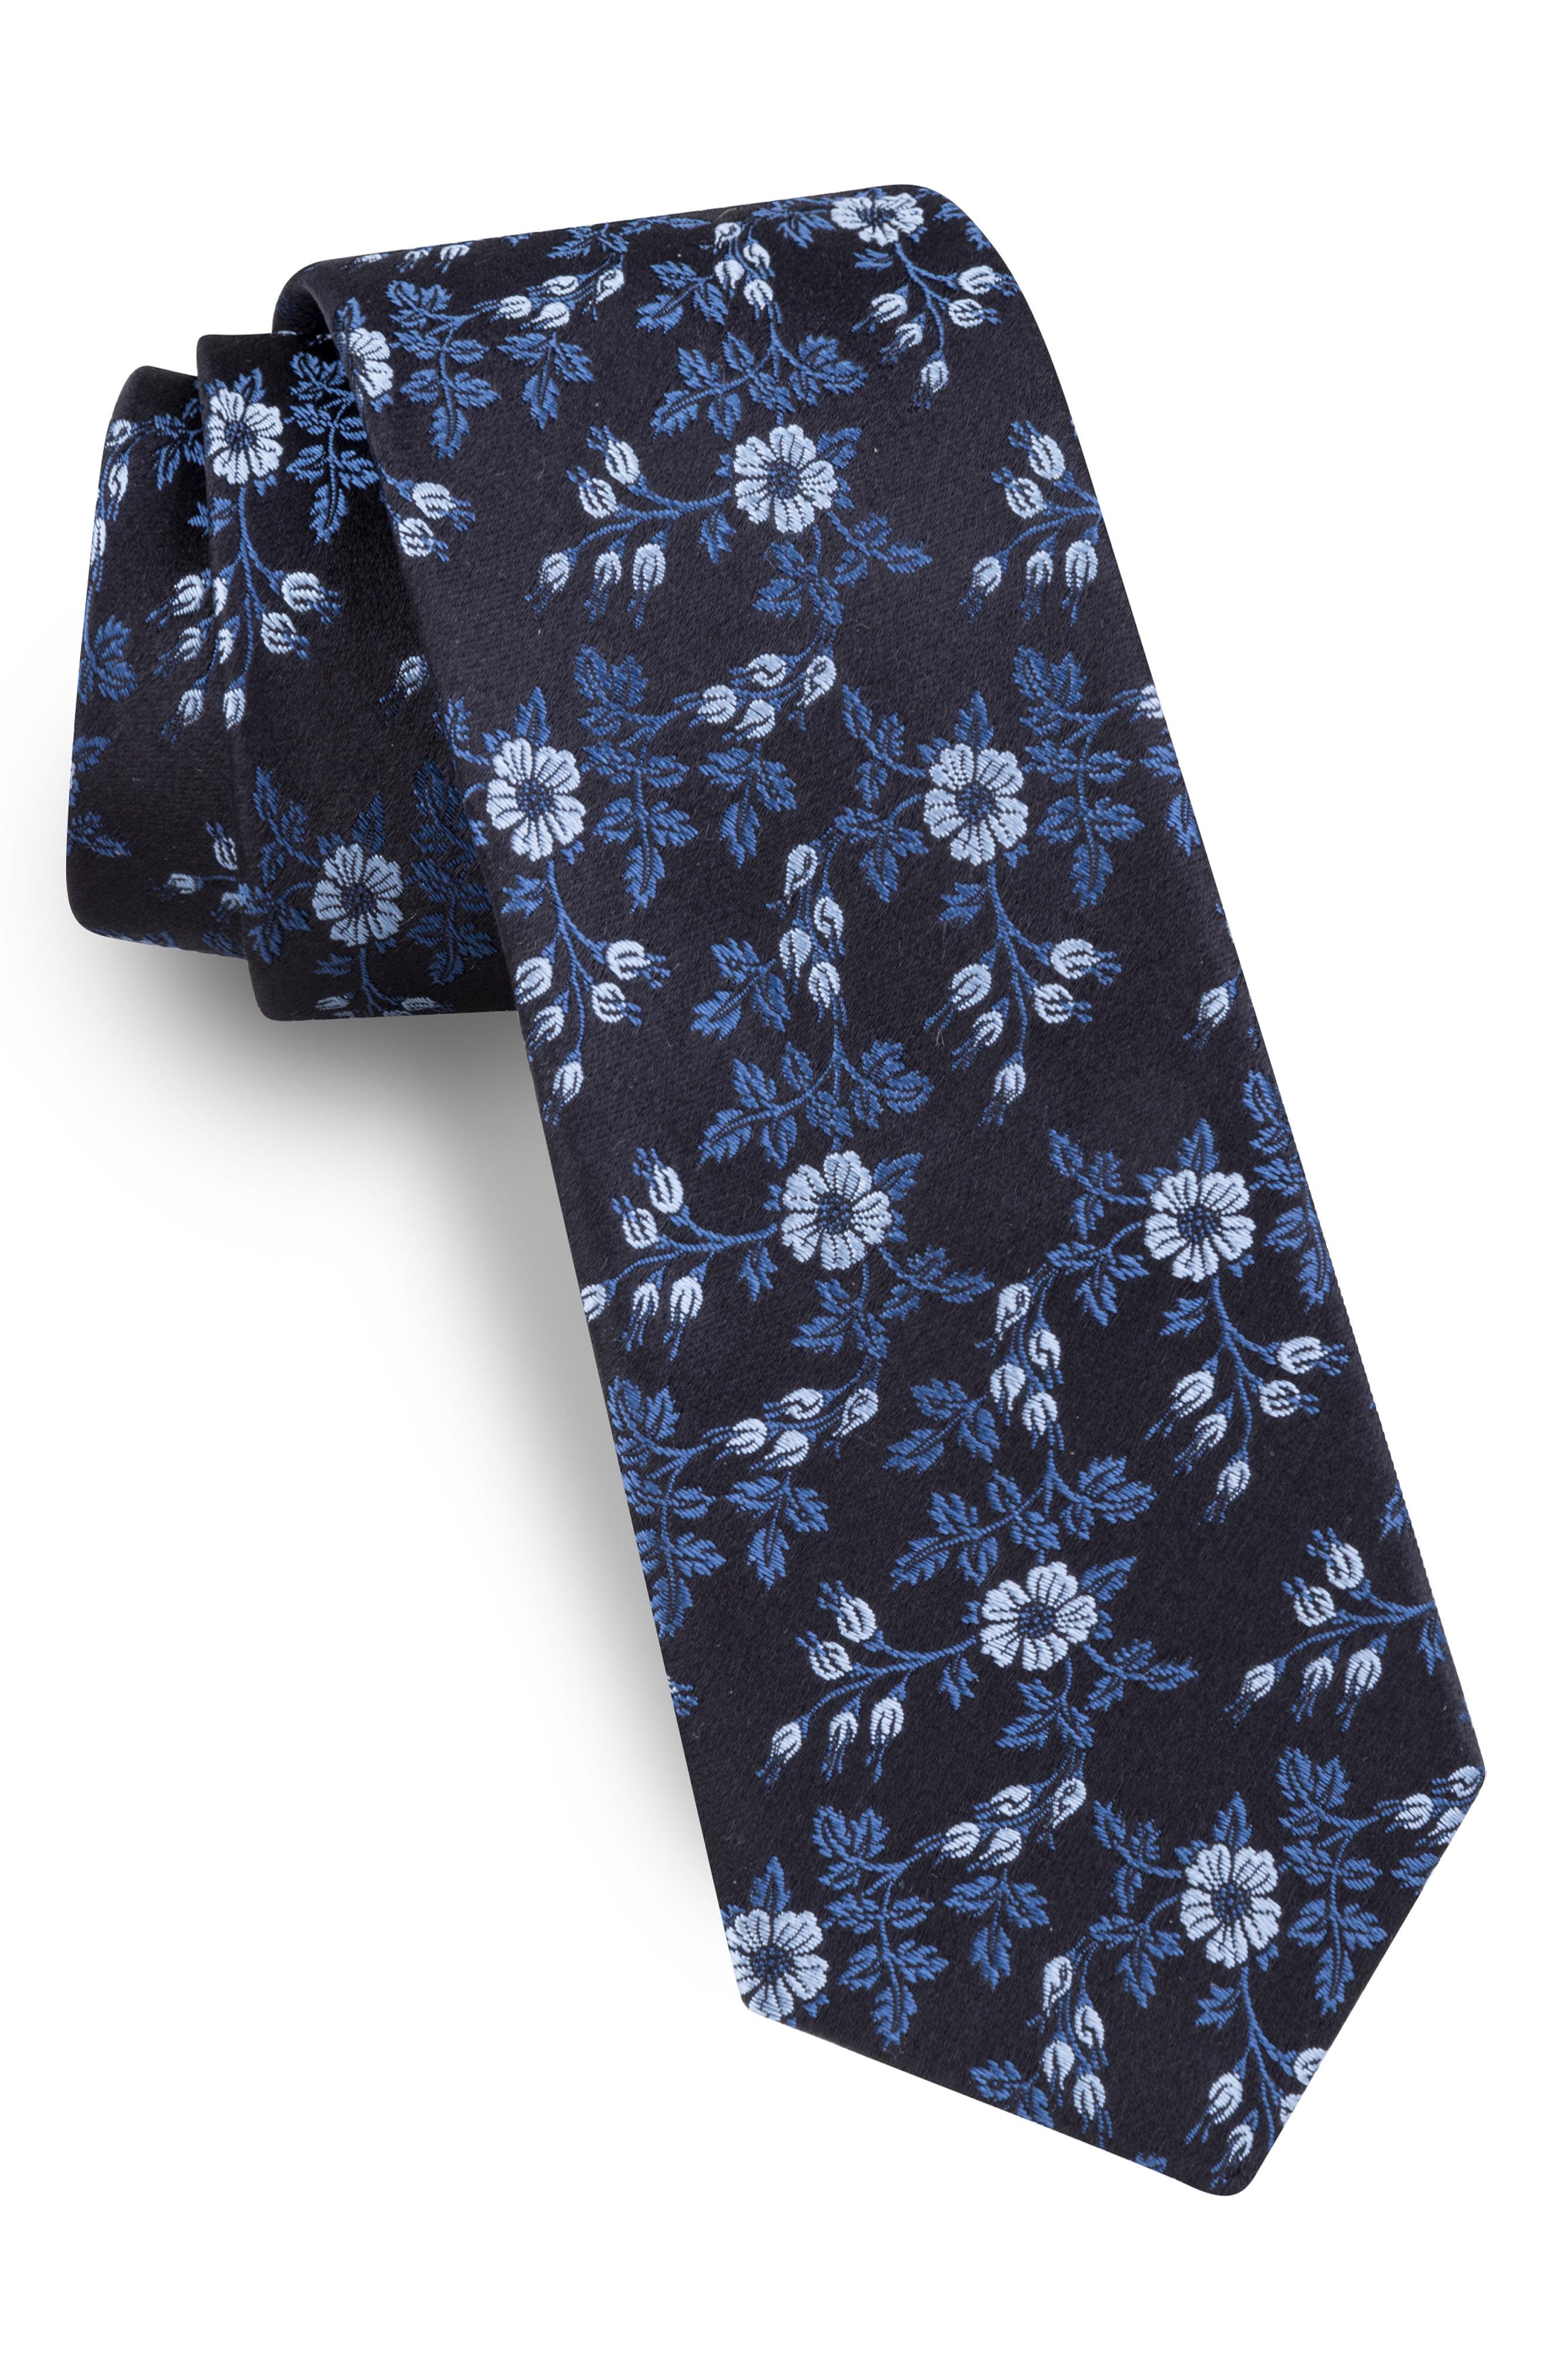 Ted Baker Vine Floral Silk Tie in Blue for Men - Lyst